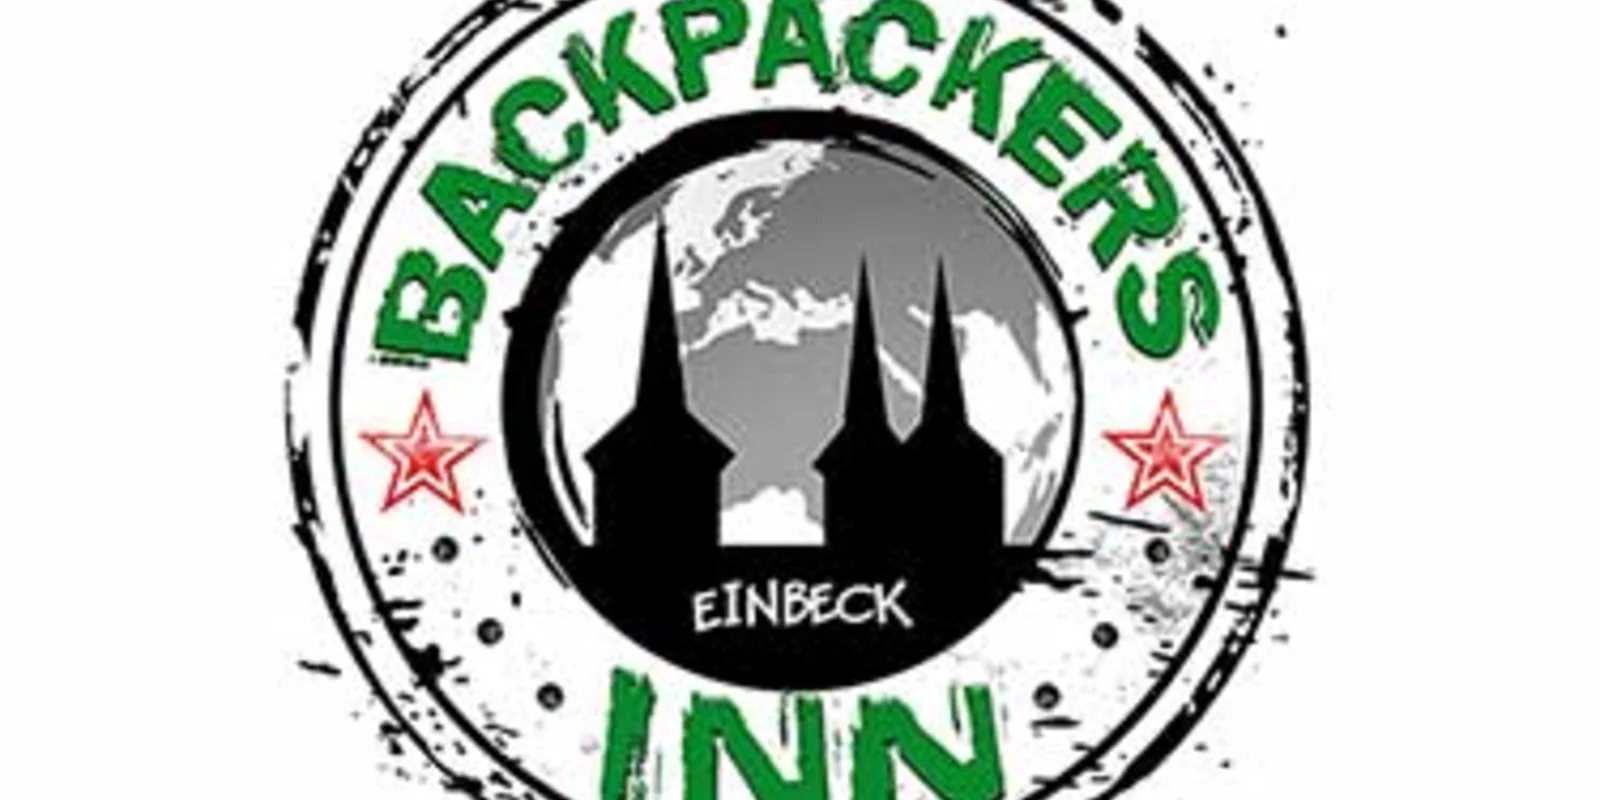 Backpackers Inn